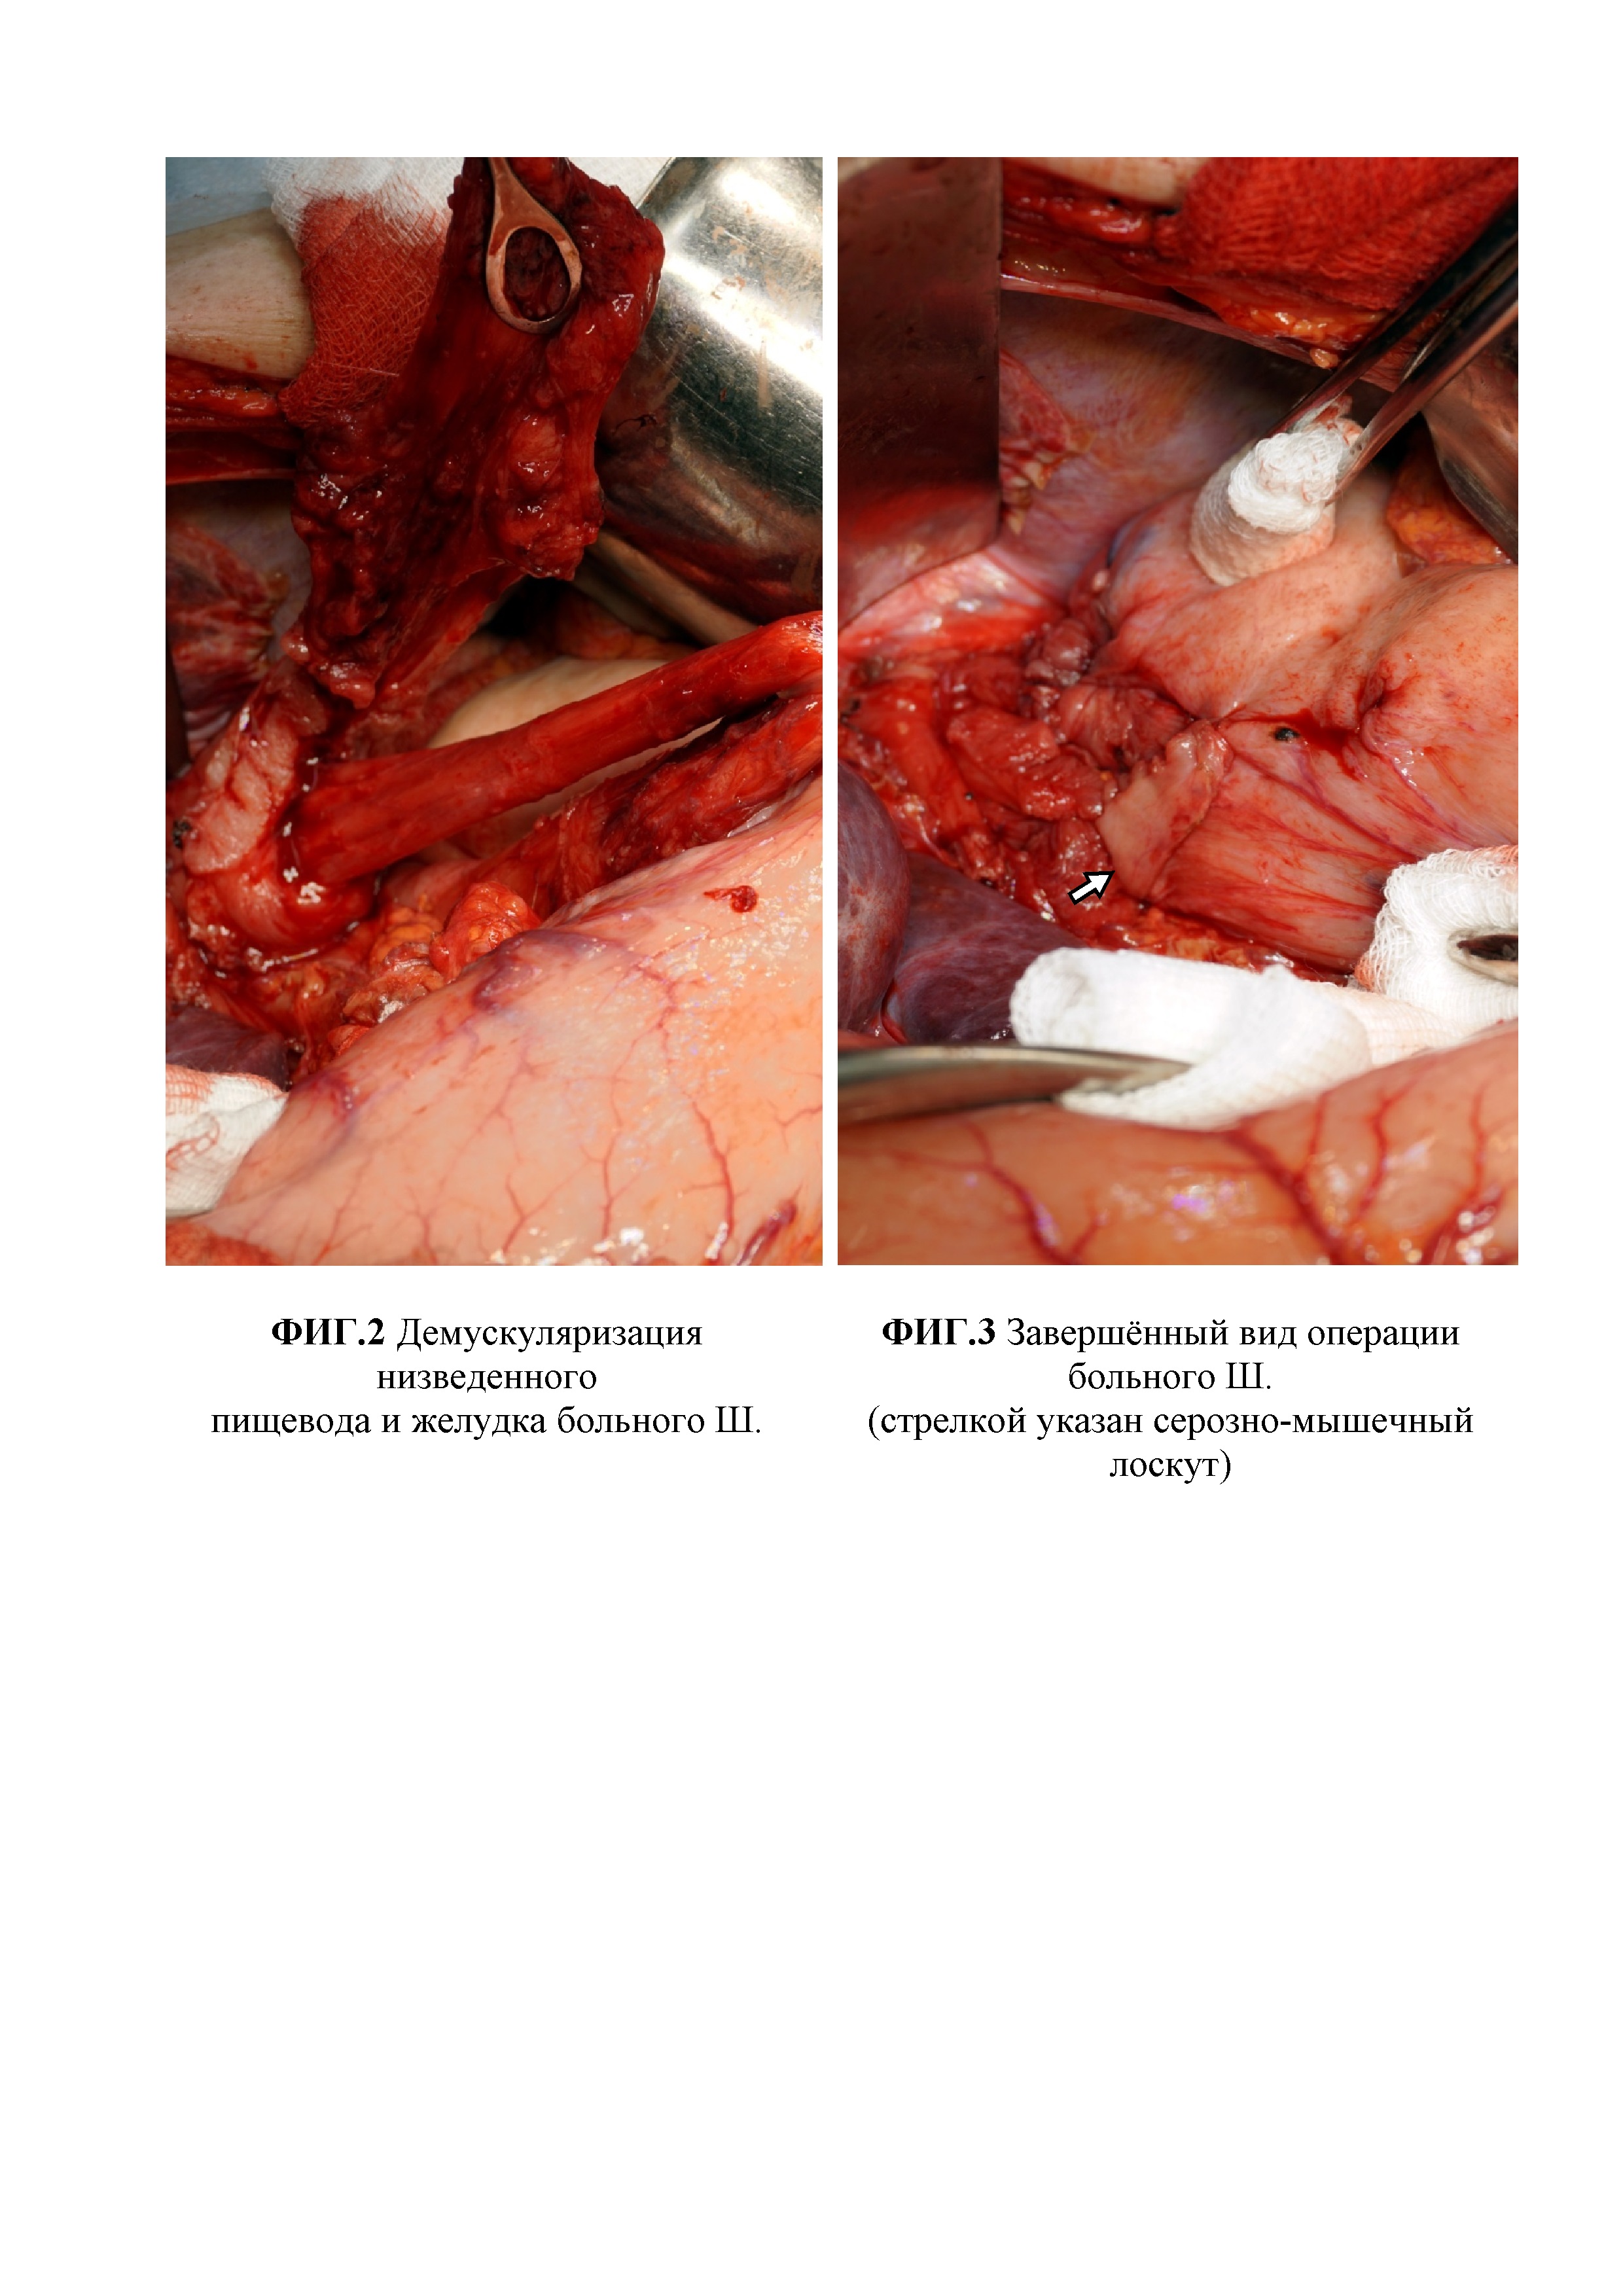 Способ хирургического лечения ахалазии кардии III-IV стадии, осложненной S-, L-образной деформацией пищевода